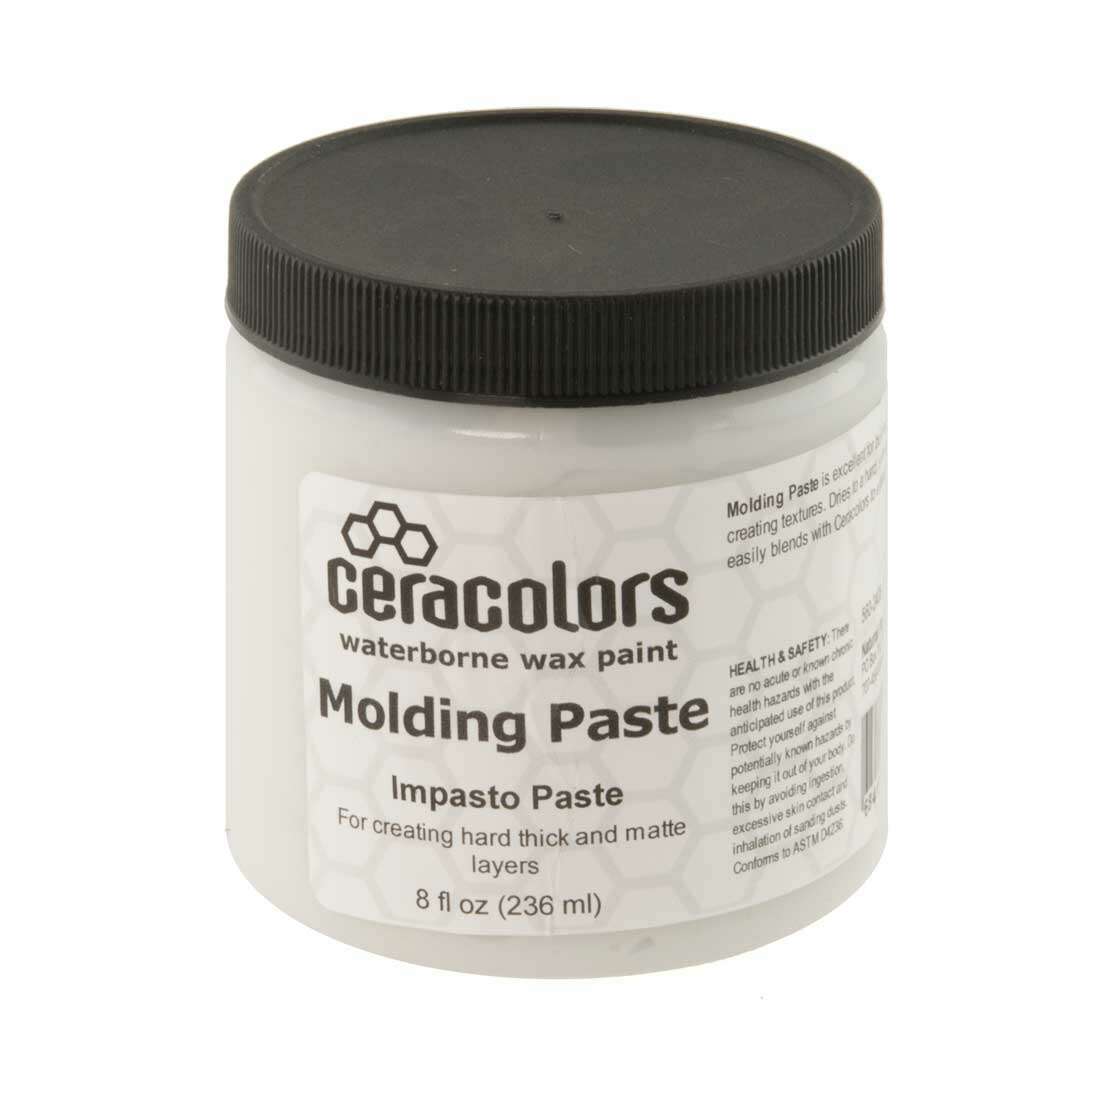 Ceracolors Molding Paste 8 fl oz